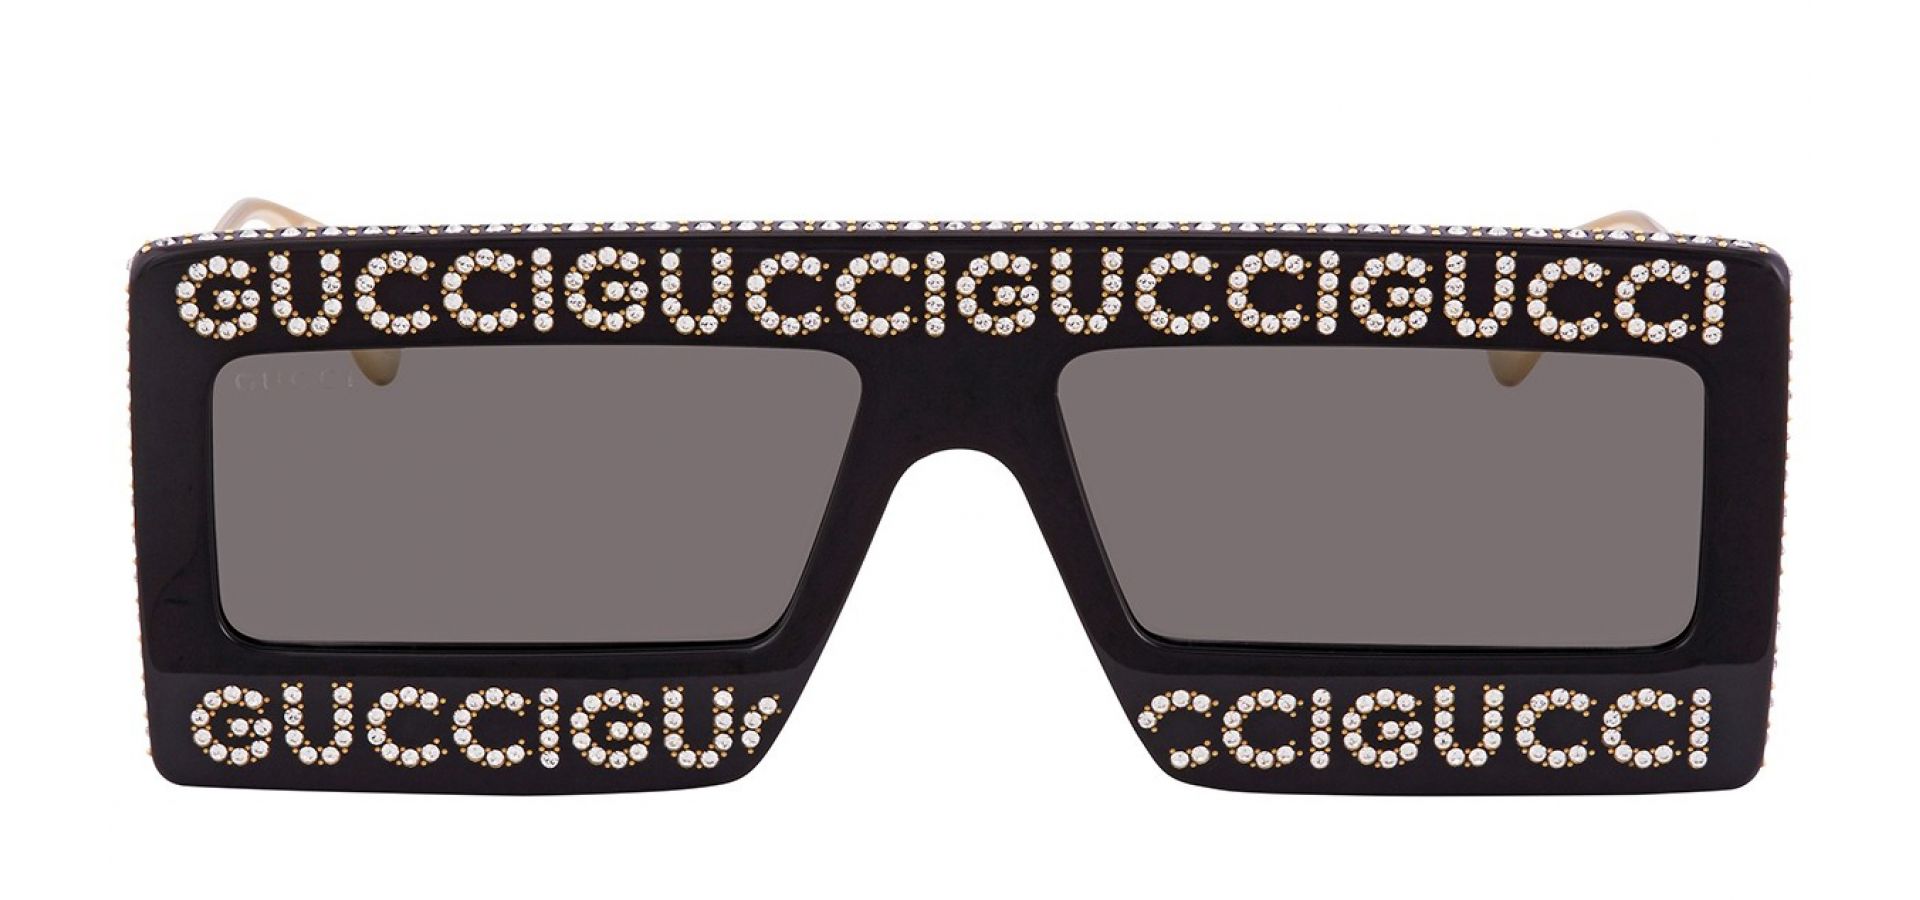 Sončna očala Gucci GG0431S 002 58: Velikost: 58/18/145, Spol: ženska, Material: acetat/kovinska